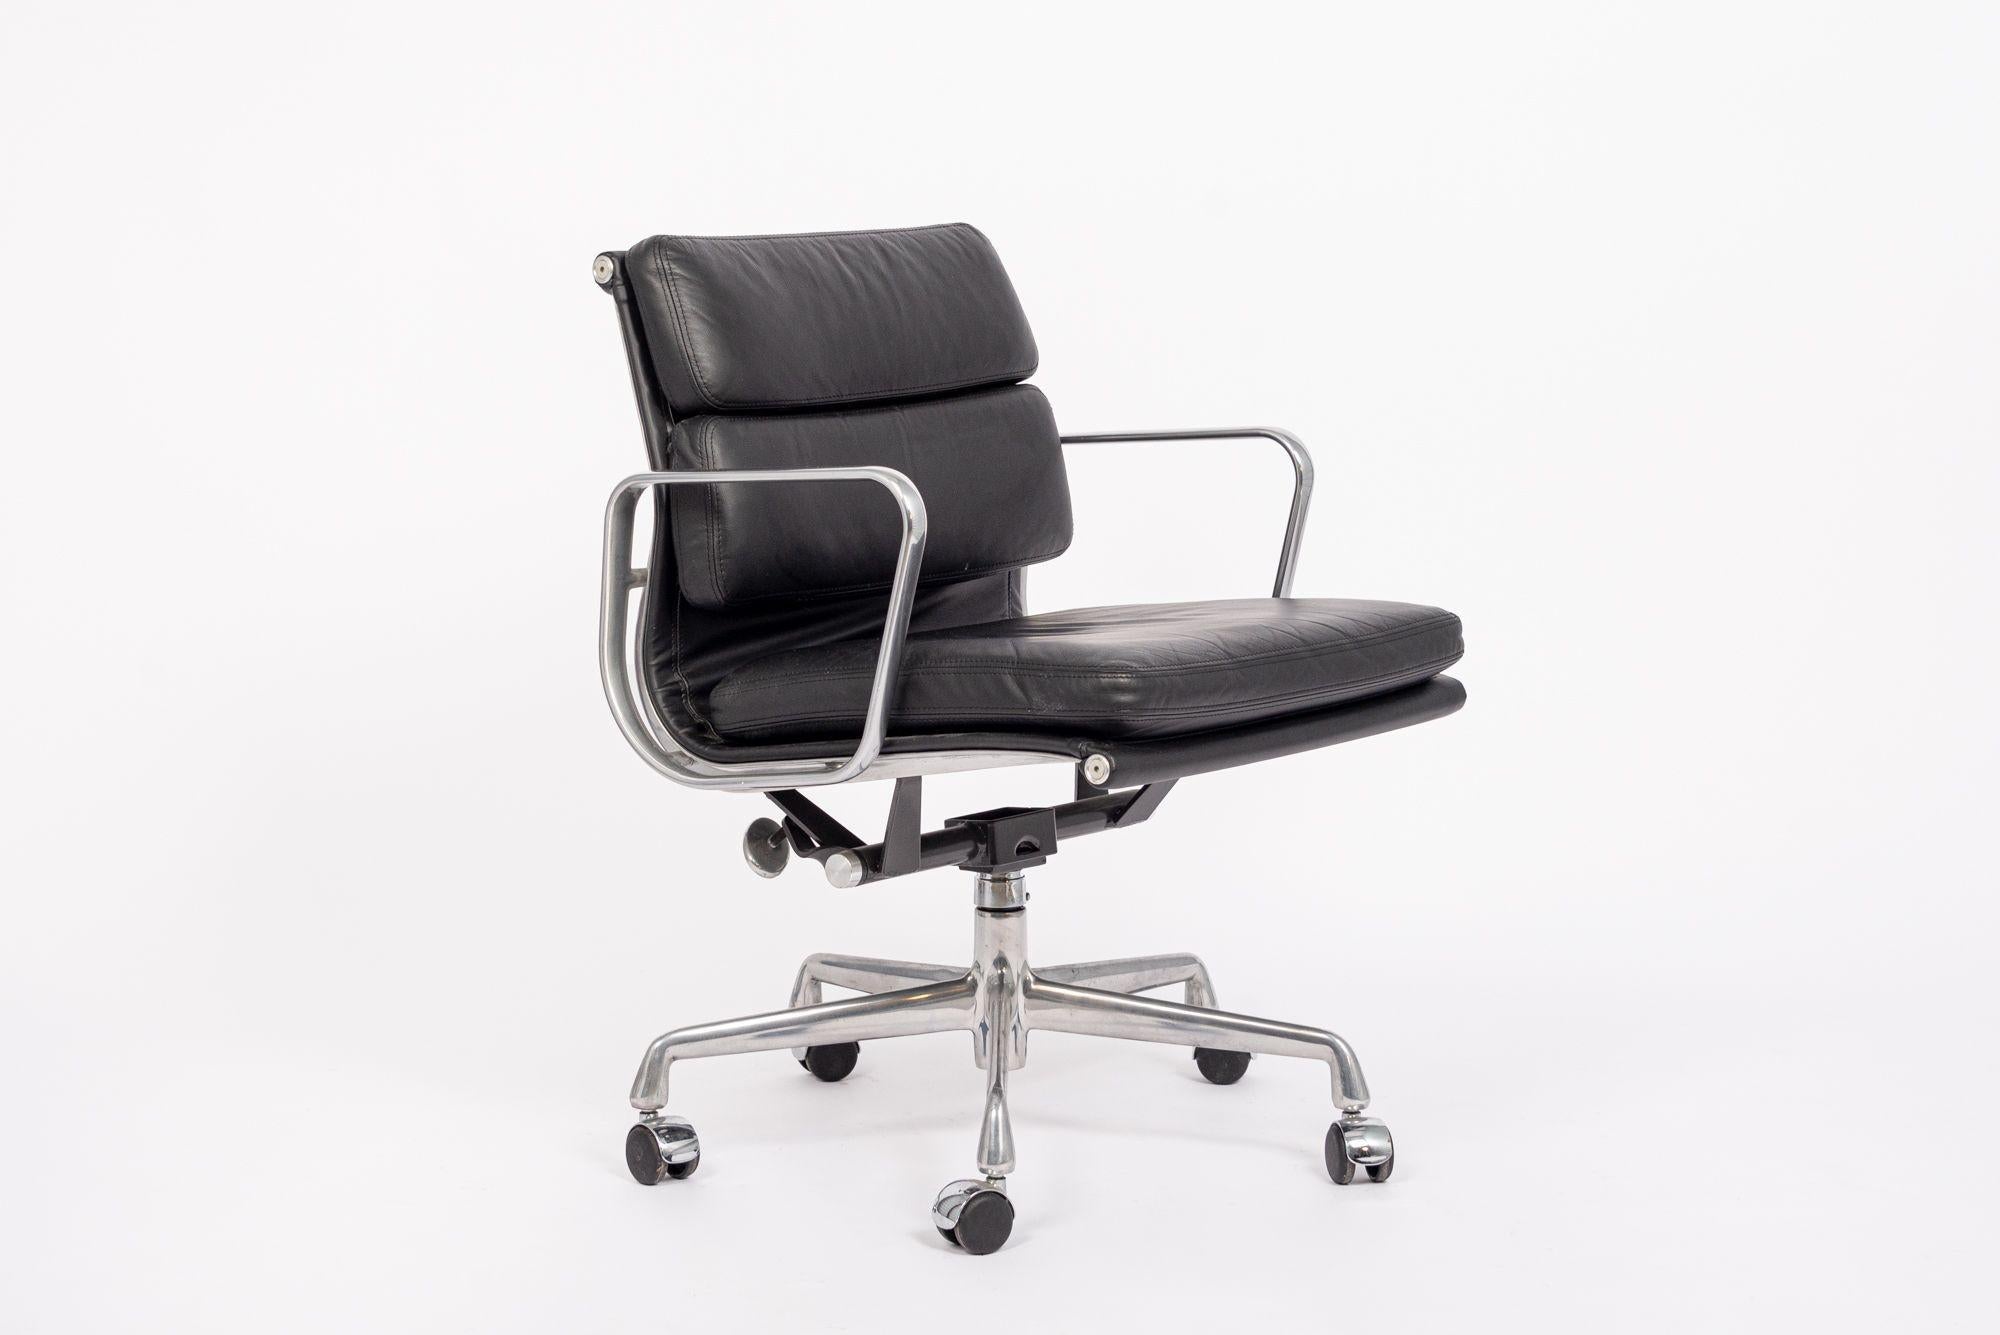 Cette authentique chaise de bureau en cuir noir Eames for Herman Miller Soft Pad Management Height de la Collection S a été fabriquée en 2001. Cette chaise de bureau classique et moderne du milieu du siècle a été introduite pour la première fois en